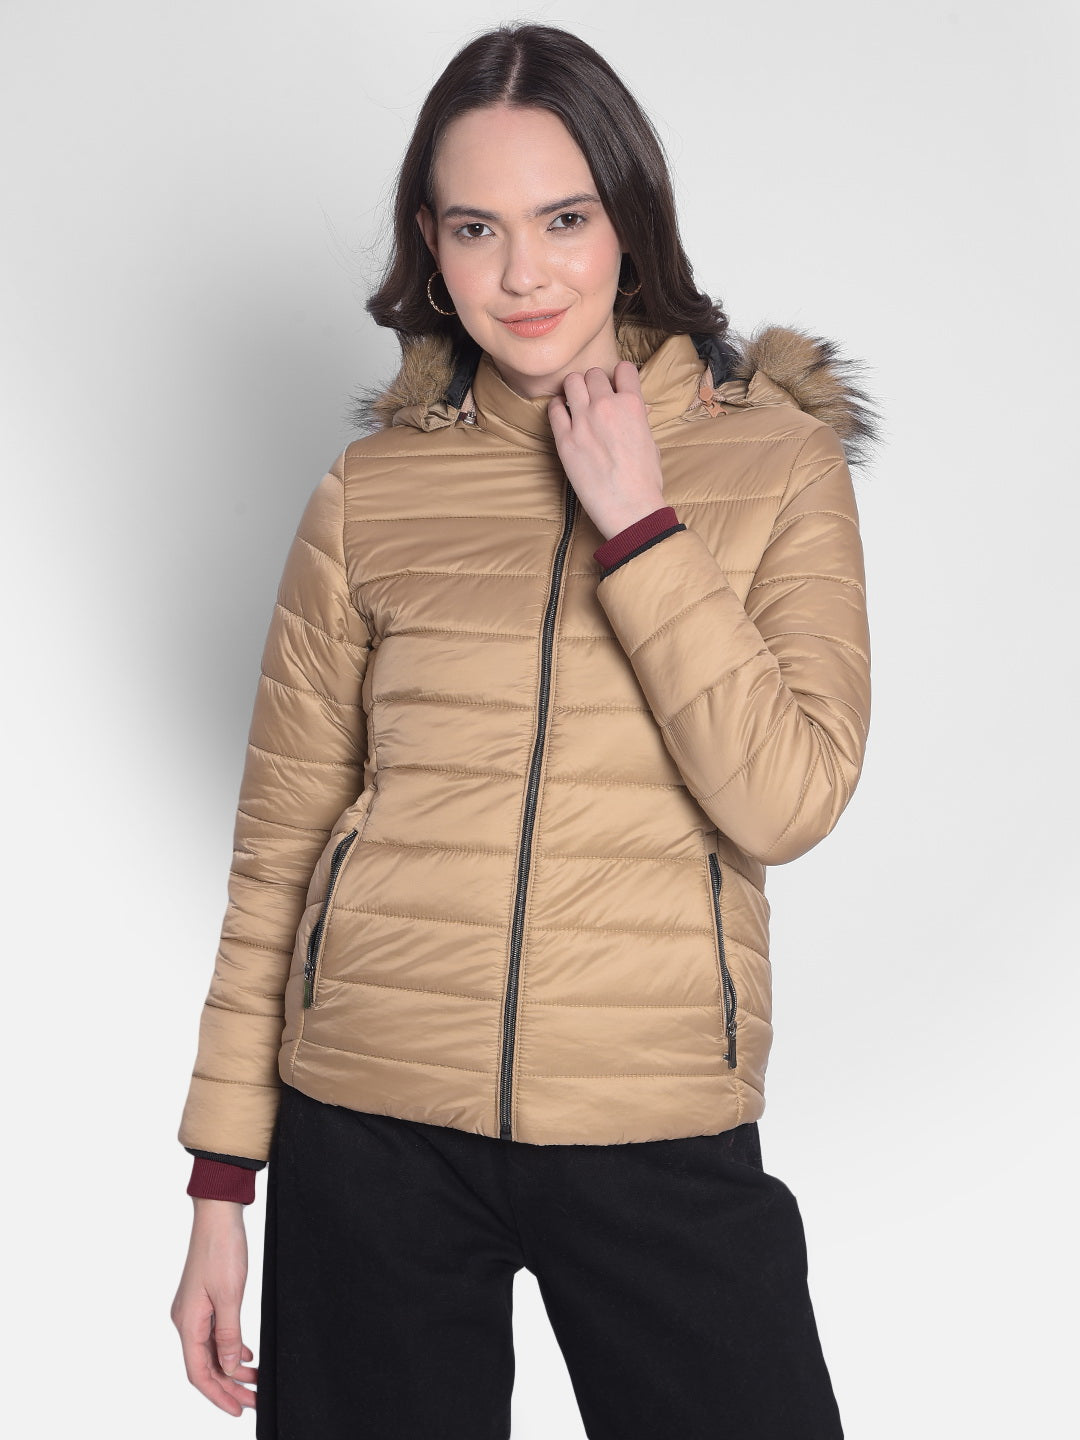 Beige Hooded Jacket With Faux Fur Detail-Women Jackets-Crimsoune Club